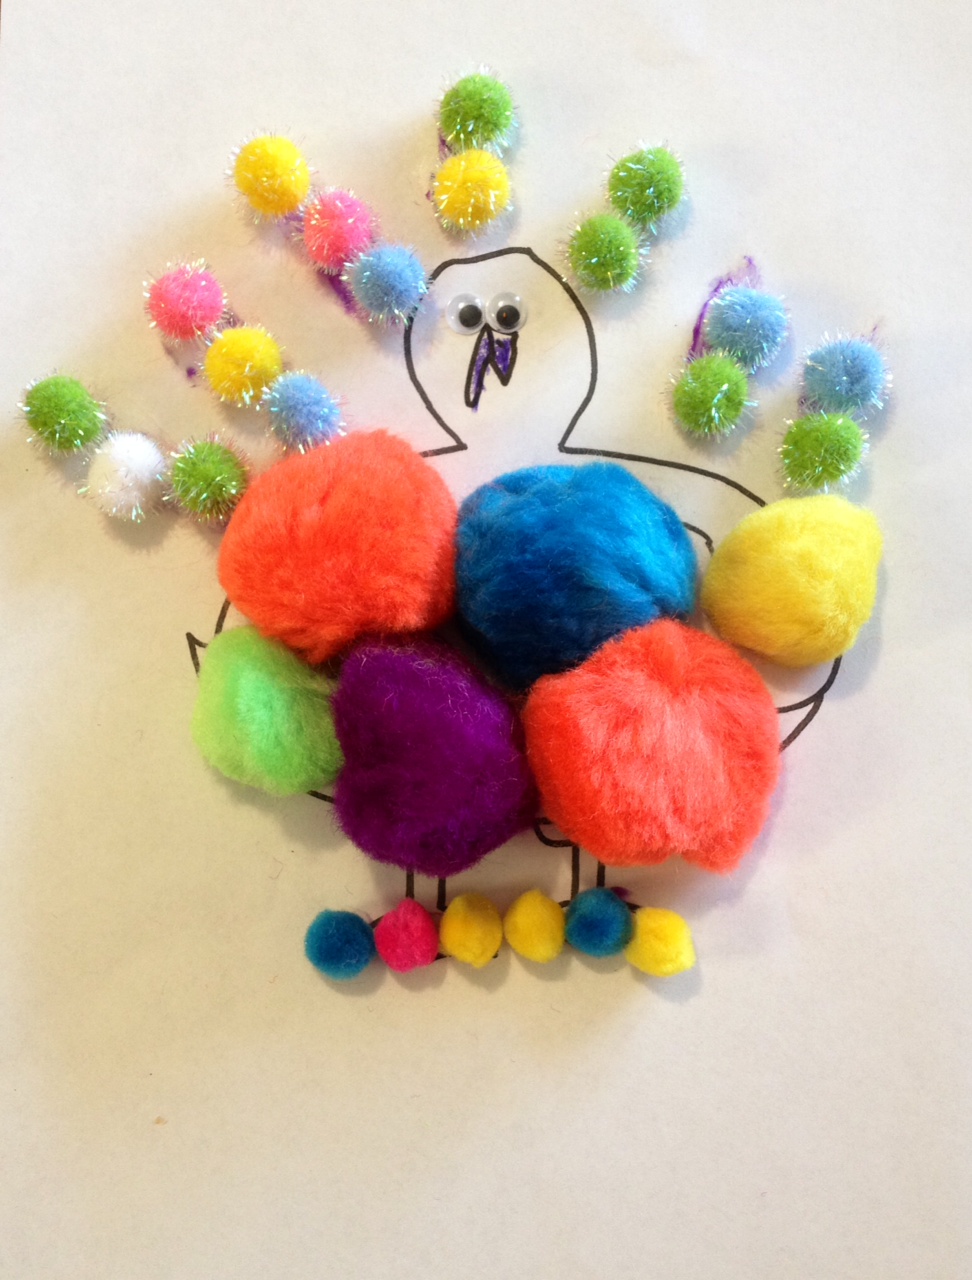 Turkey in Disguise Thanksgiving Craft